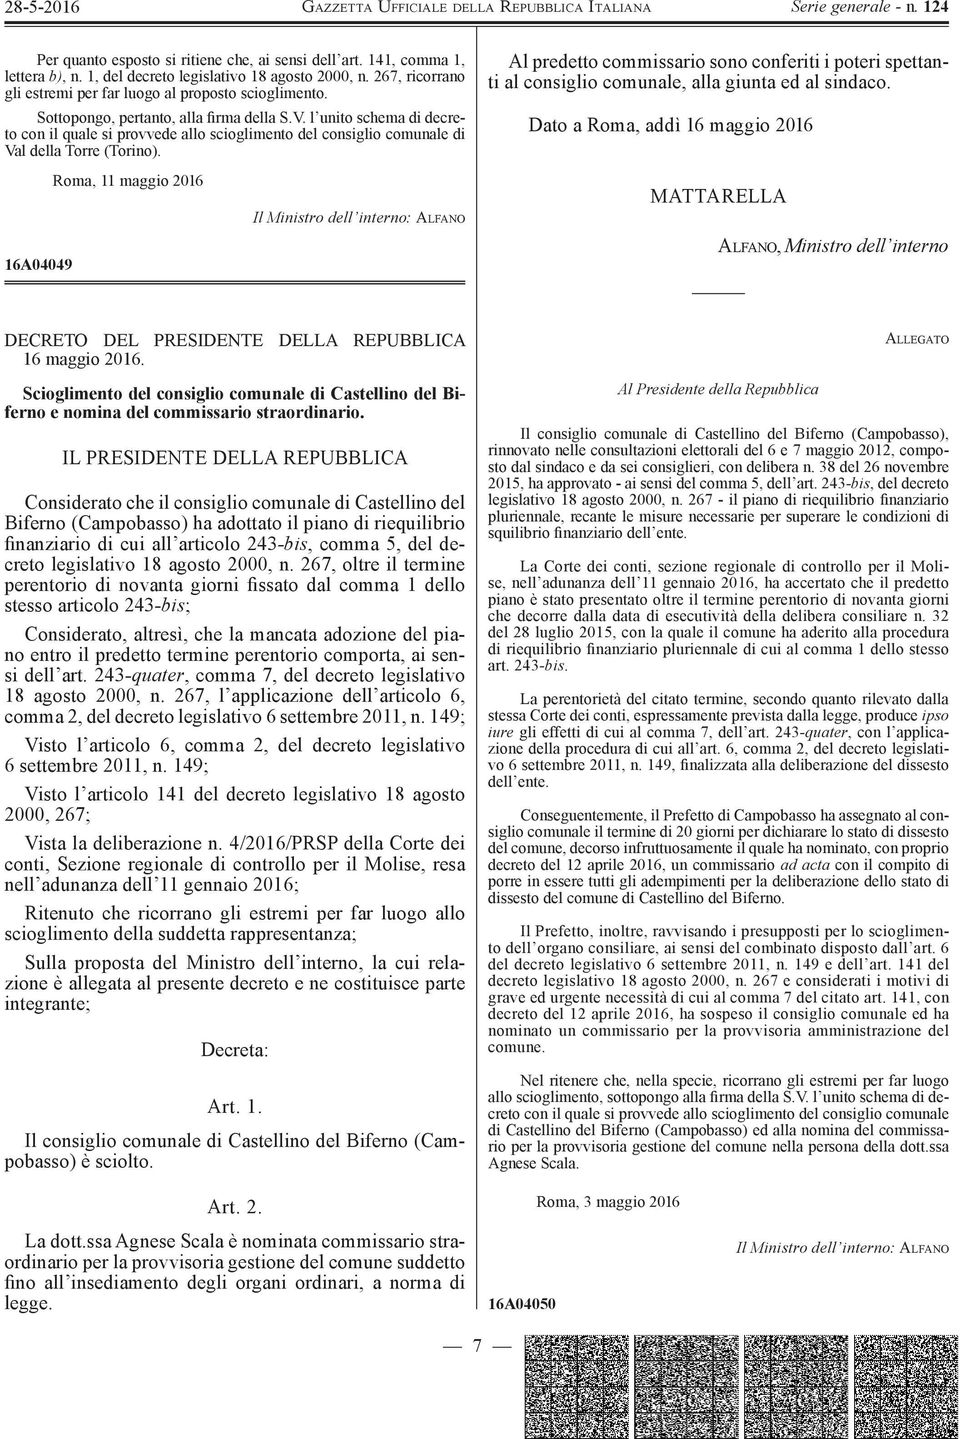 16A04049 Roma, 11 maggio 2016 Il Ministro dell interno: ALFANO Al predetto commissario sono conferiti i poteri spettanti al consiglio comunale, alla giunta ed al sindaco.